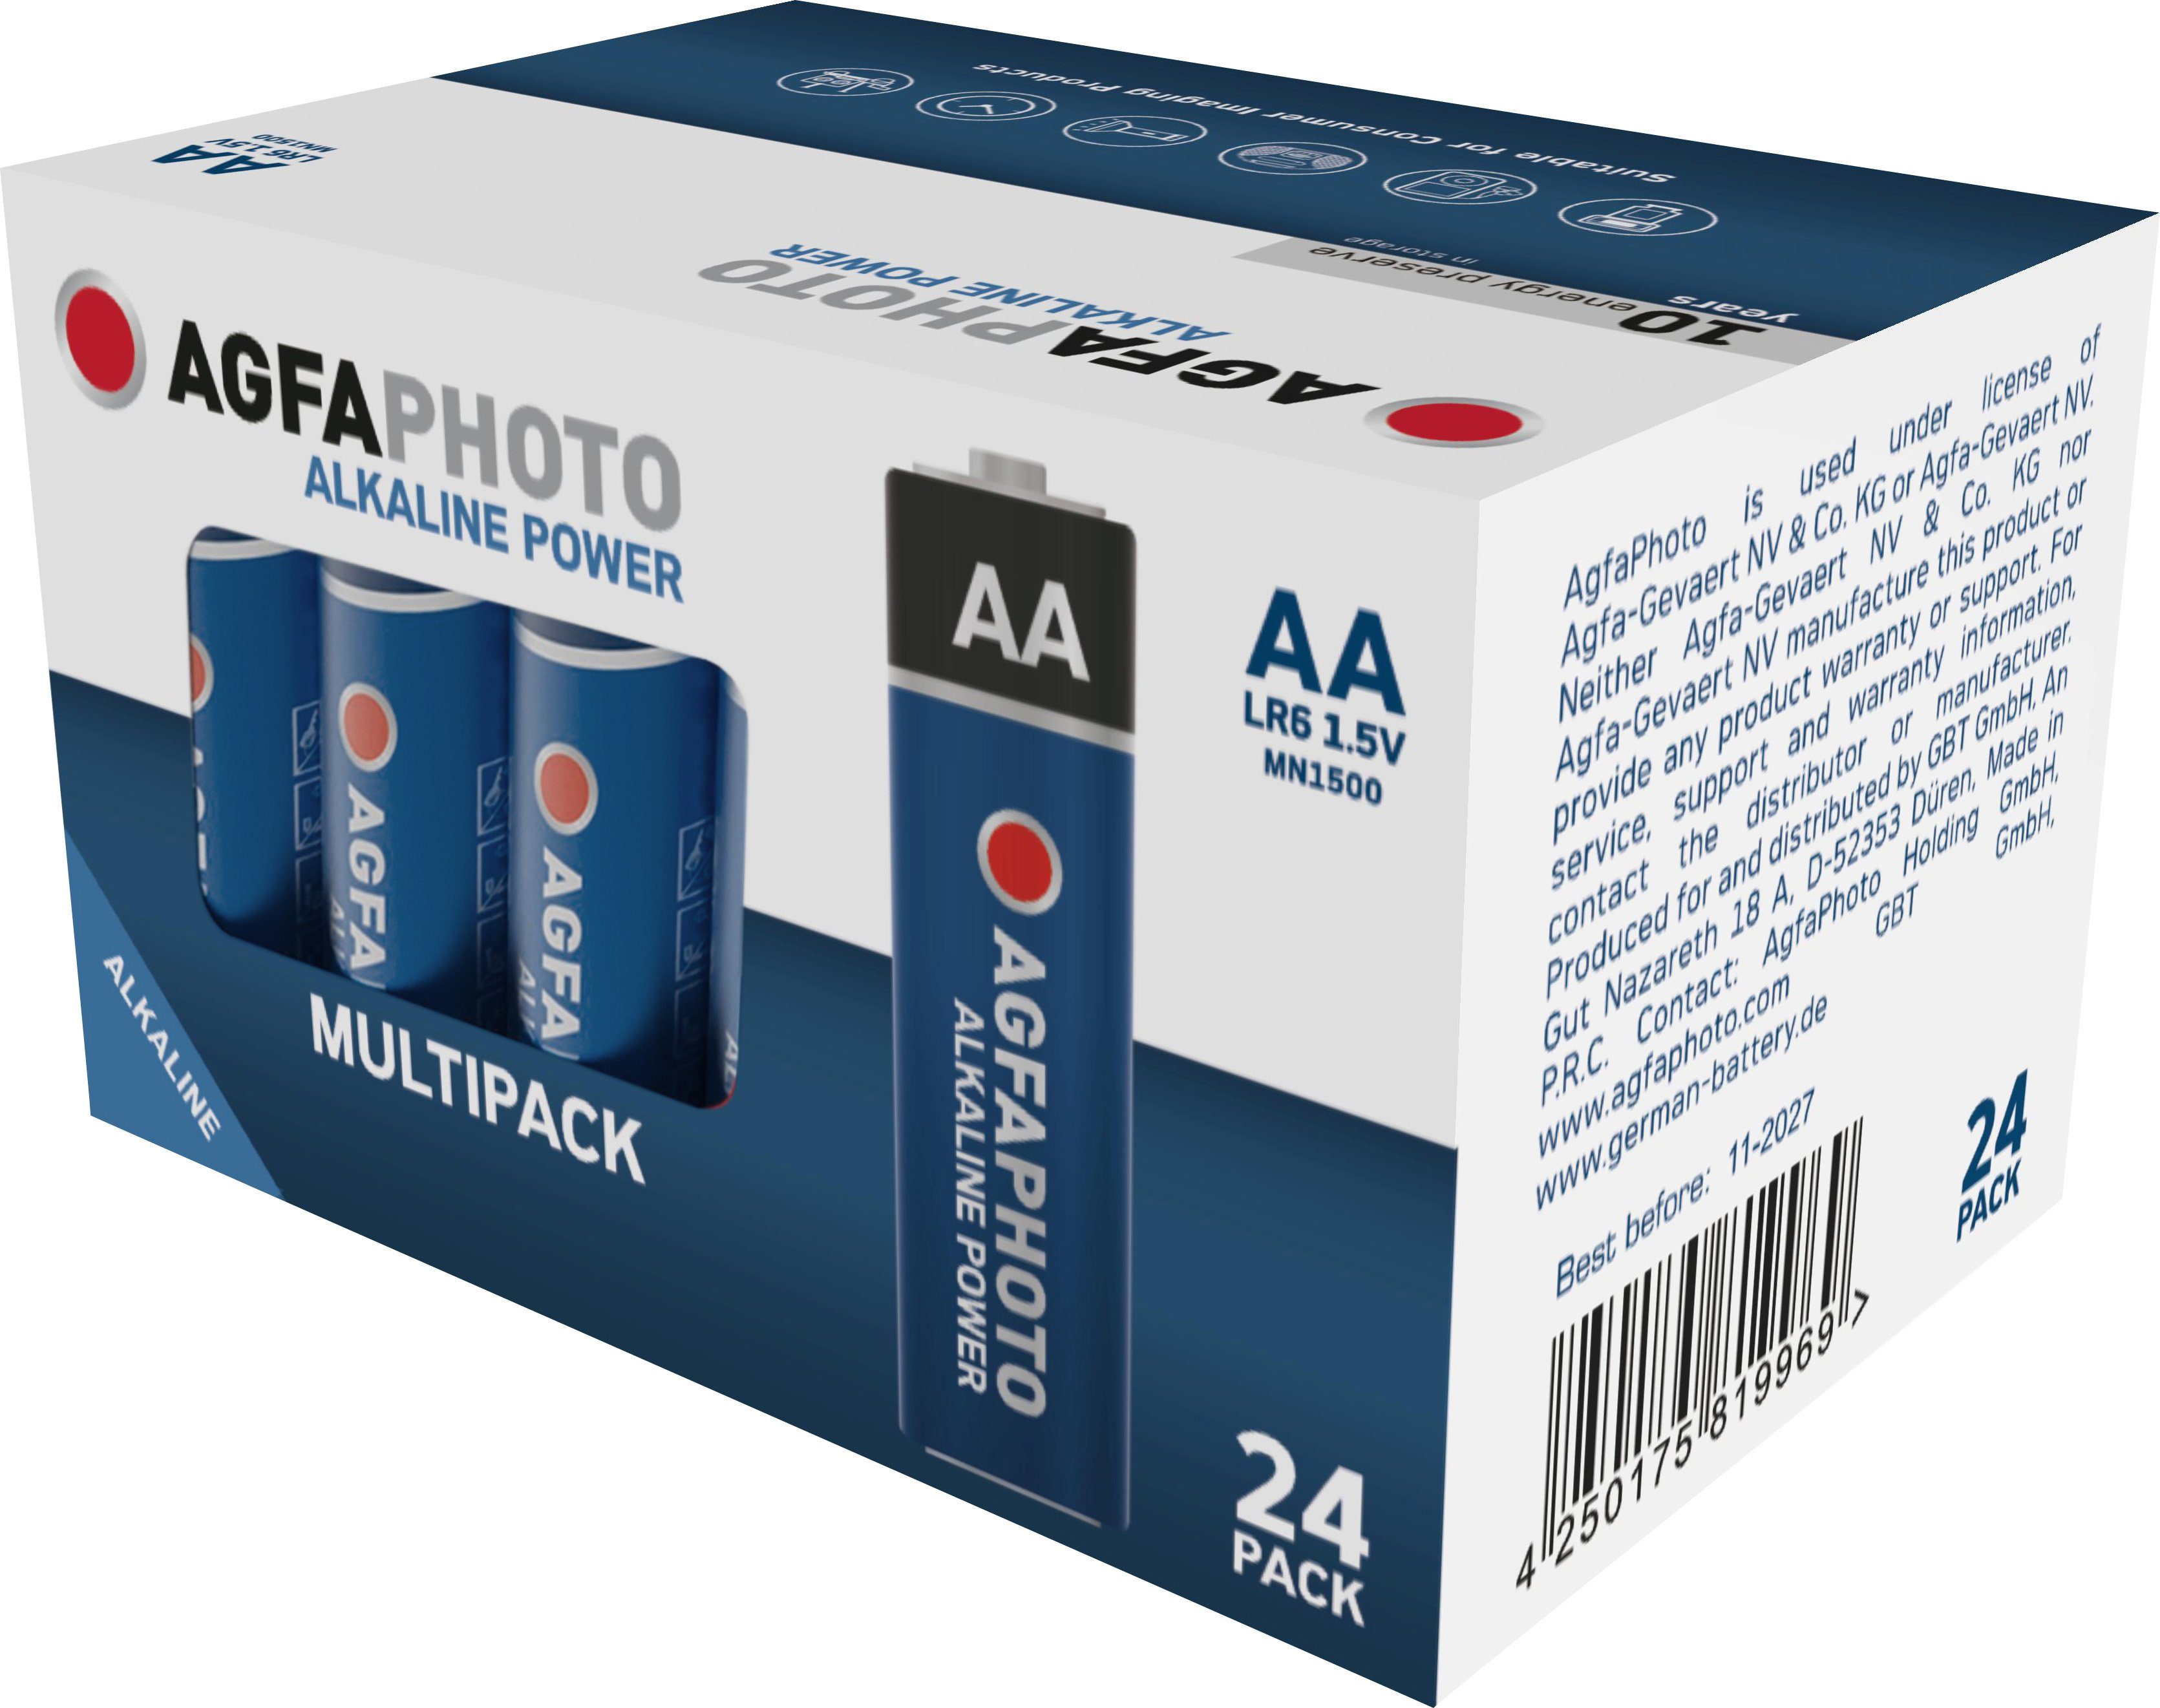 AgfaPhoto Agfaphoto Batterie Alkaline, Mignon, AA, LR06, 1.5V Power, Retail Box Batterie